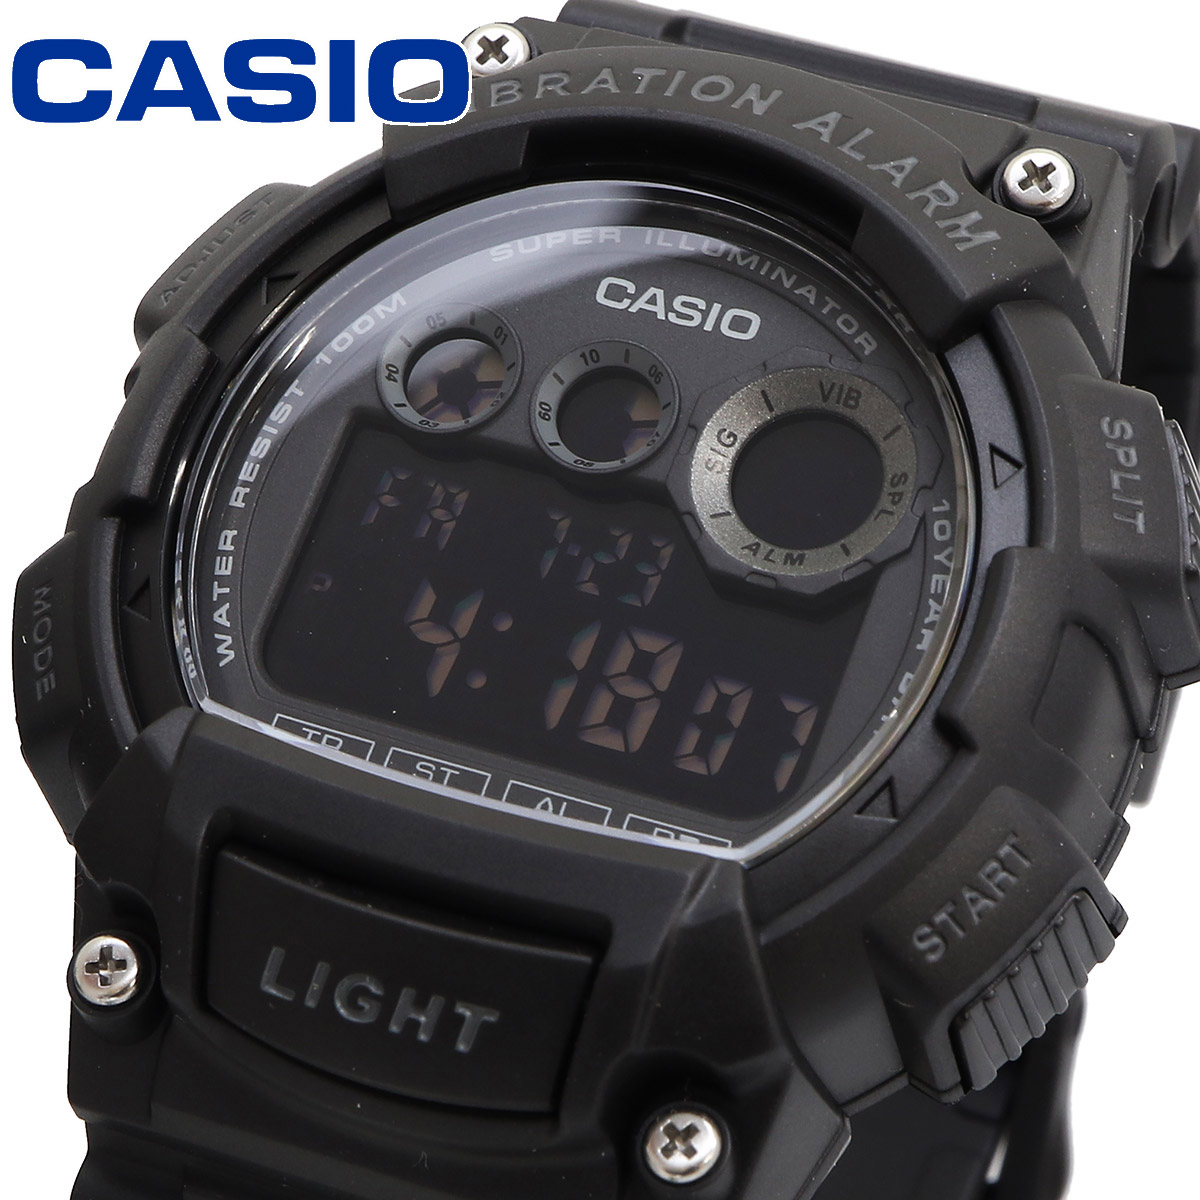 CASIO カシオ 腕時計 メンズ チープカシオ チプカシ   海外モデル バイブレーション機能 W-735H-1BV